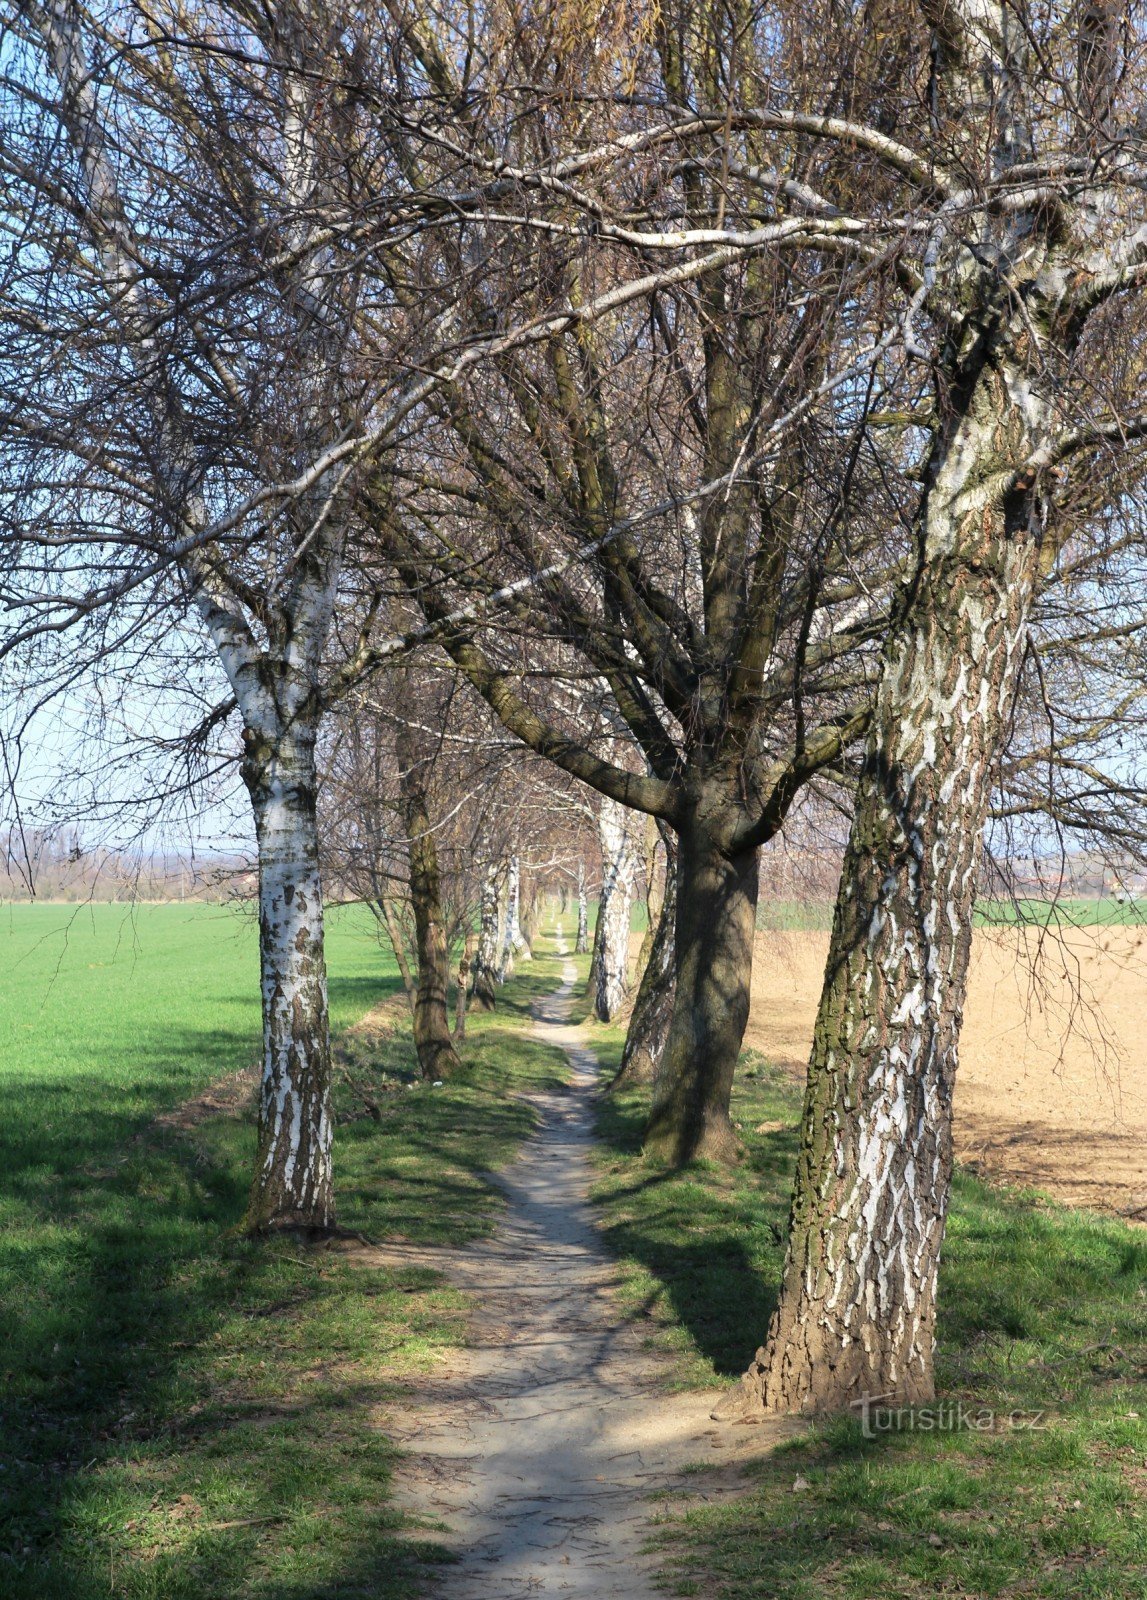 A atual cesta de Holasická tem mais o caráter de um caminho pedestre